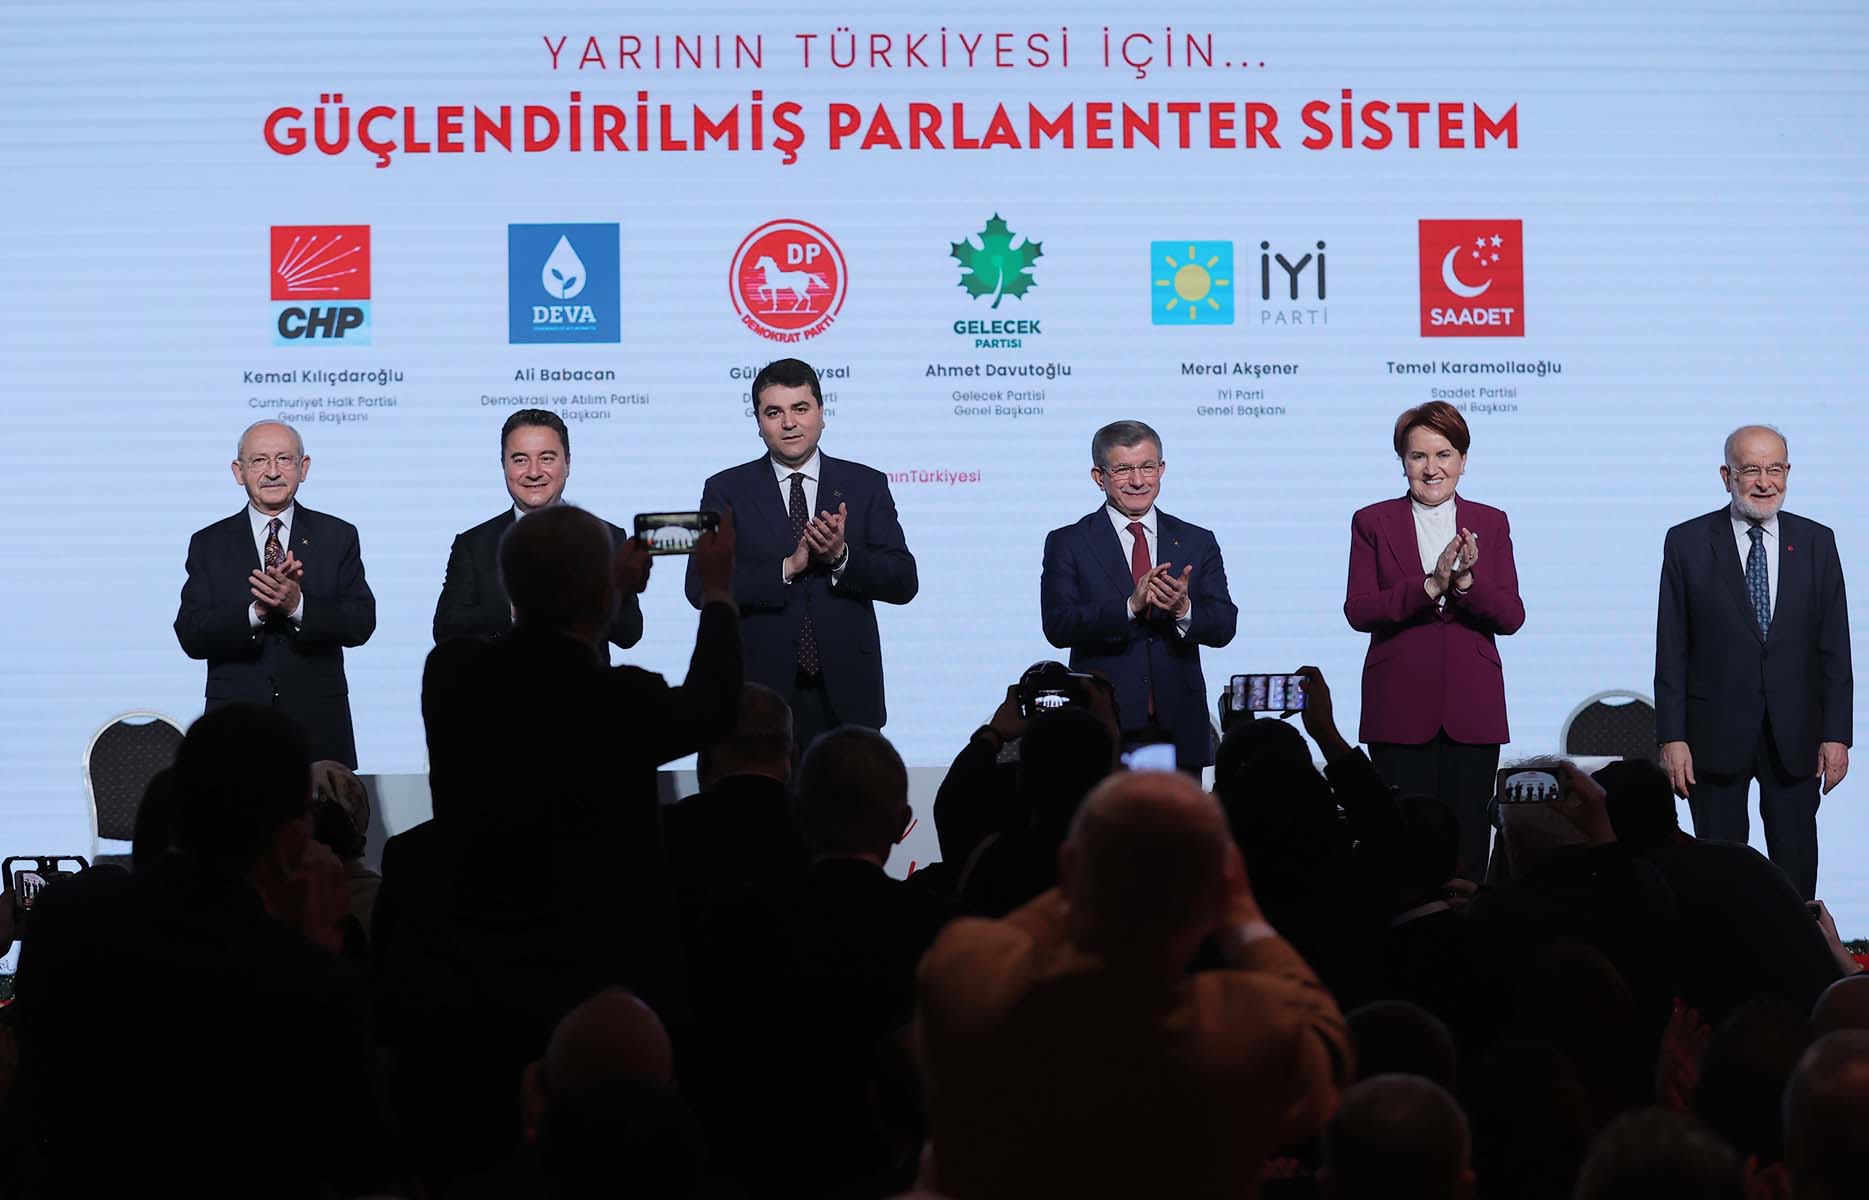 6 muhalefet partisi güçlendirilmiş parlamenter sistem çalışmalarını açıkladı